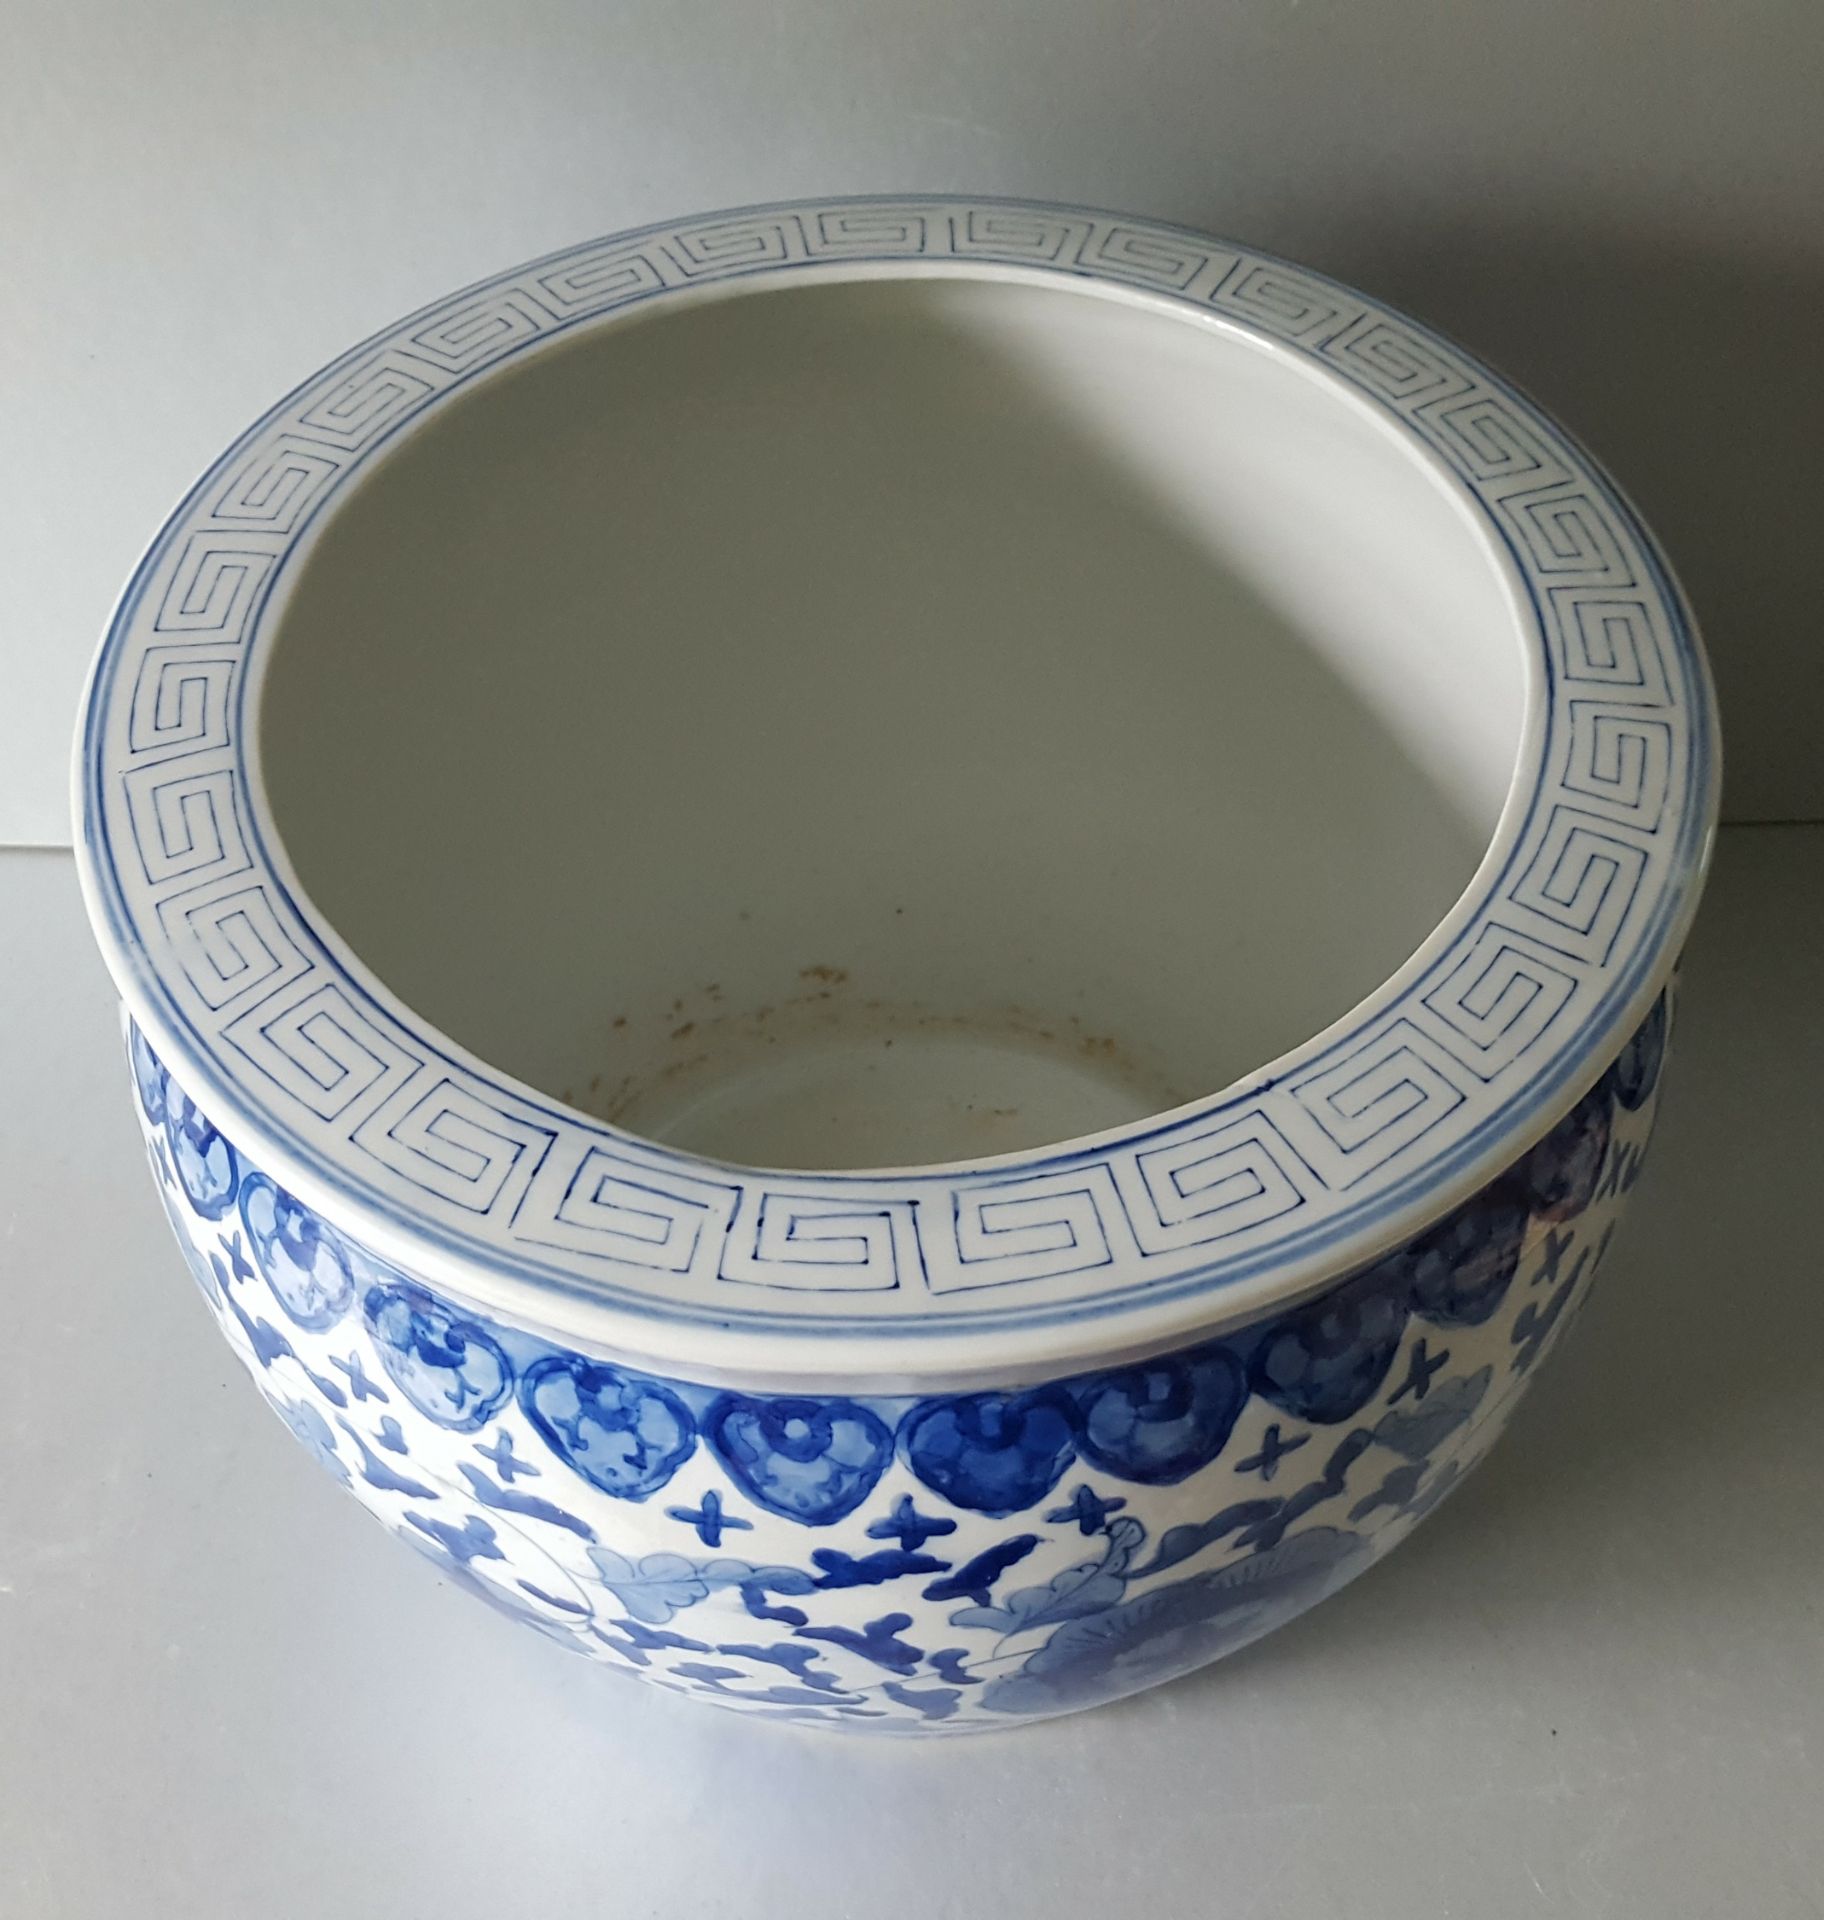 Vintage Retro Large Chinese Fish Bowl Blue & White - Image 2 of 3